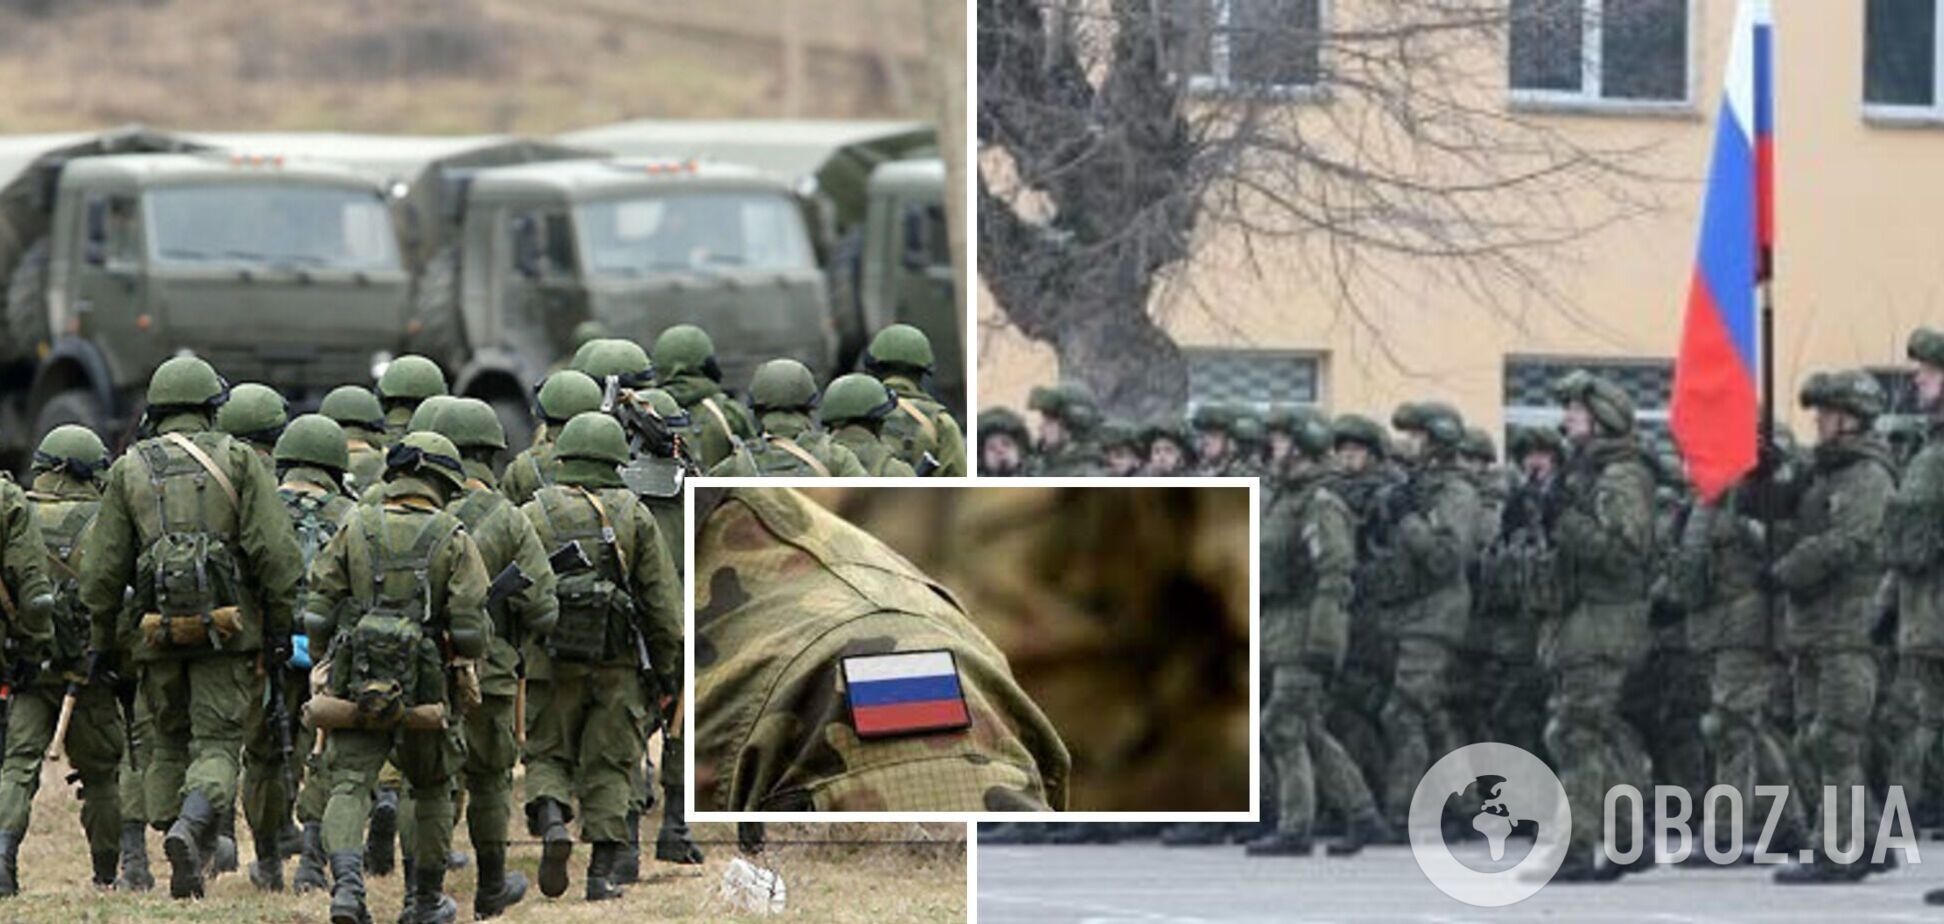 Російських окупантів на Донбасі удвічі-утричі більше, аніж воїнів ЗСУ, – Веніславський  